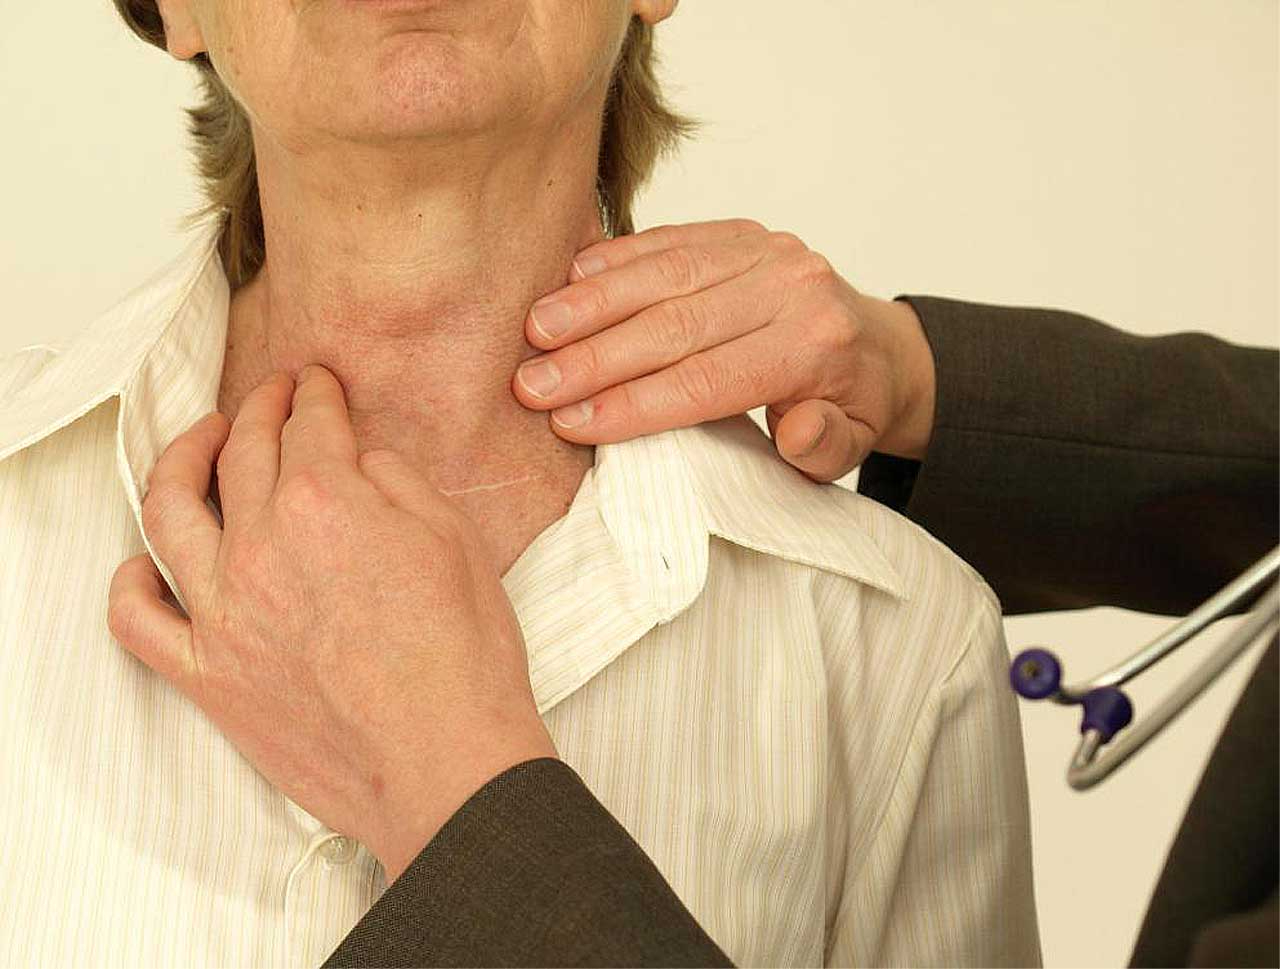 Зоб в горле. Заболевания щитовидной железы. РПК зитовидной железы симпомы. Симптомы.рааащитовидной желрзы. Опухоль щитовиднойсжелезы.